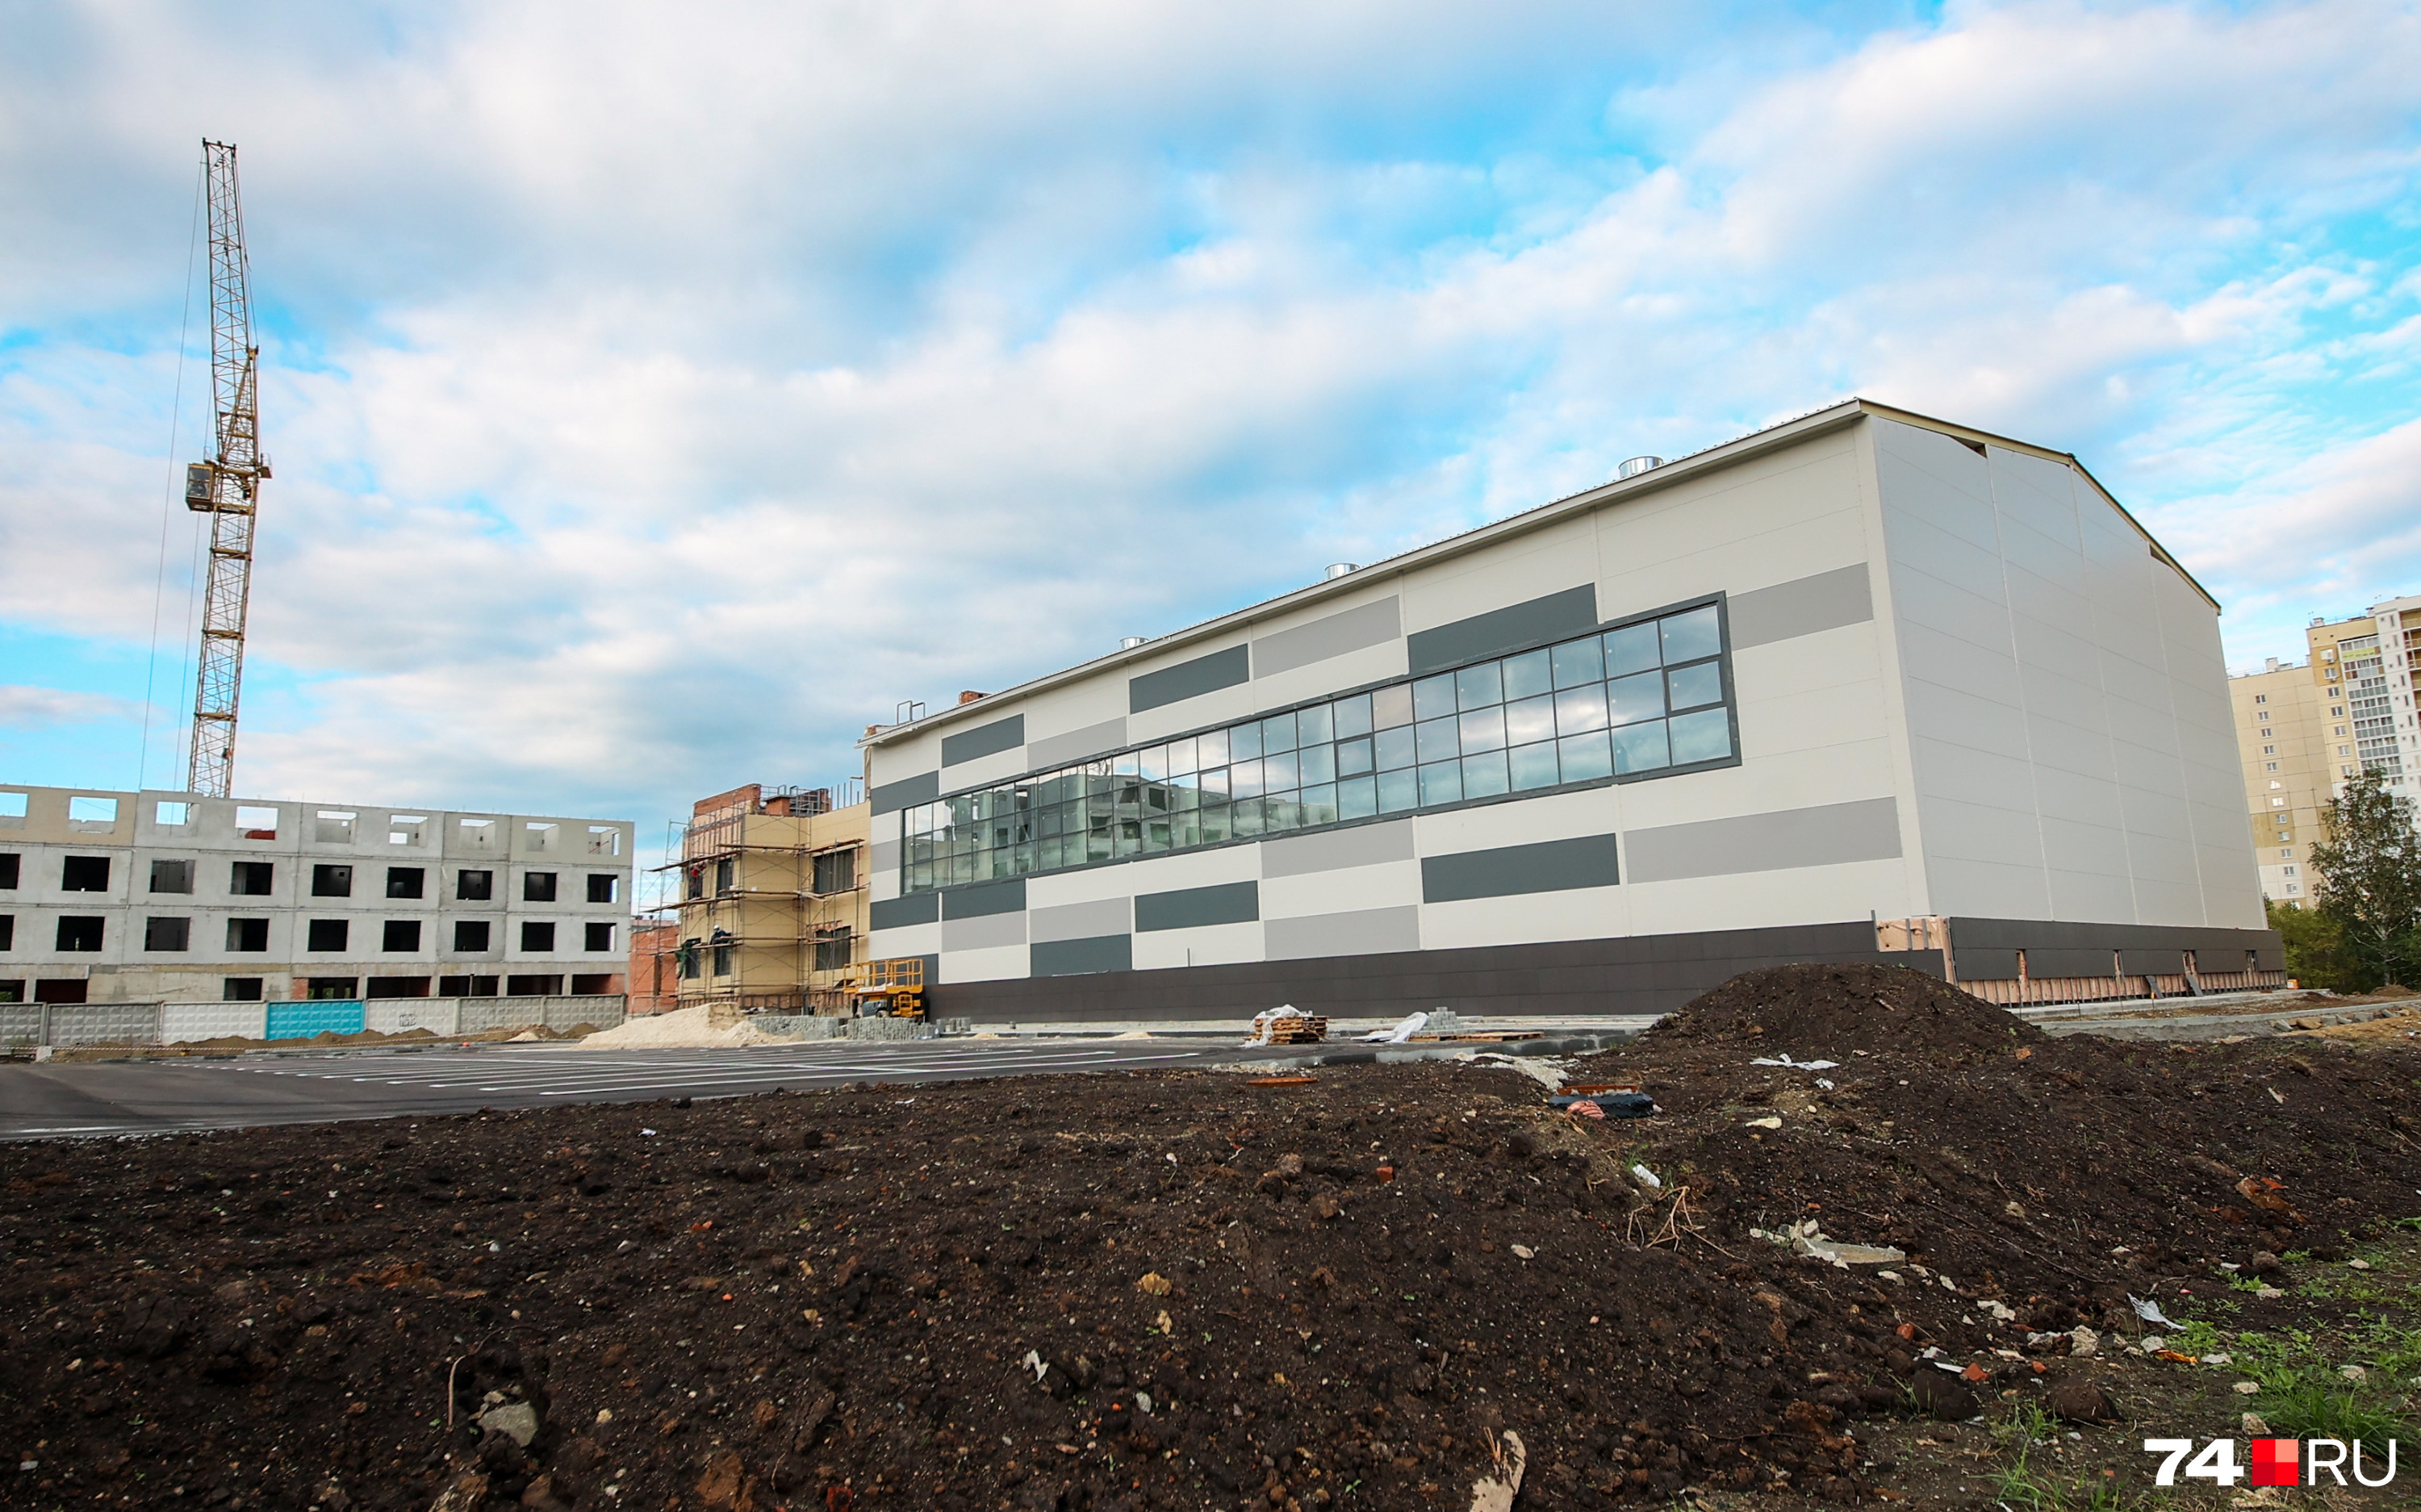 ФОК разместили вплотную к территории будущего межвузовского кампуса, строительство которого уже началось